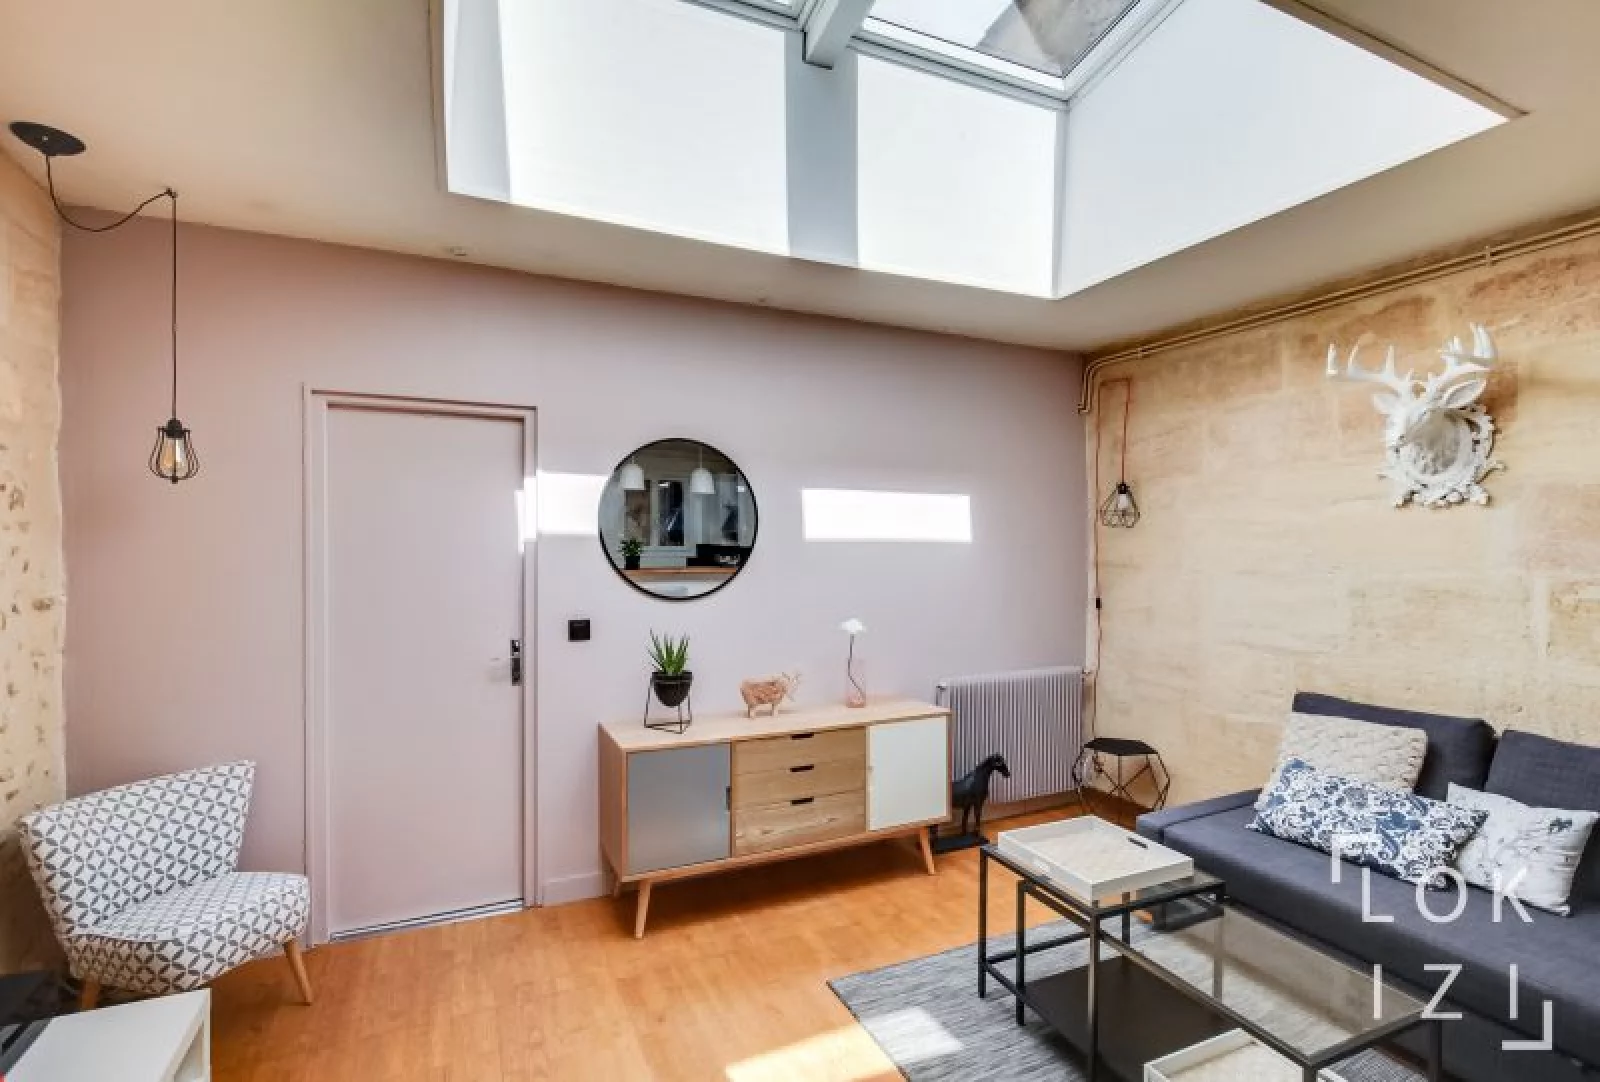 Location appartement meublé 2 pièces 50m² (Bordeaux centre)